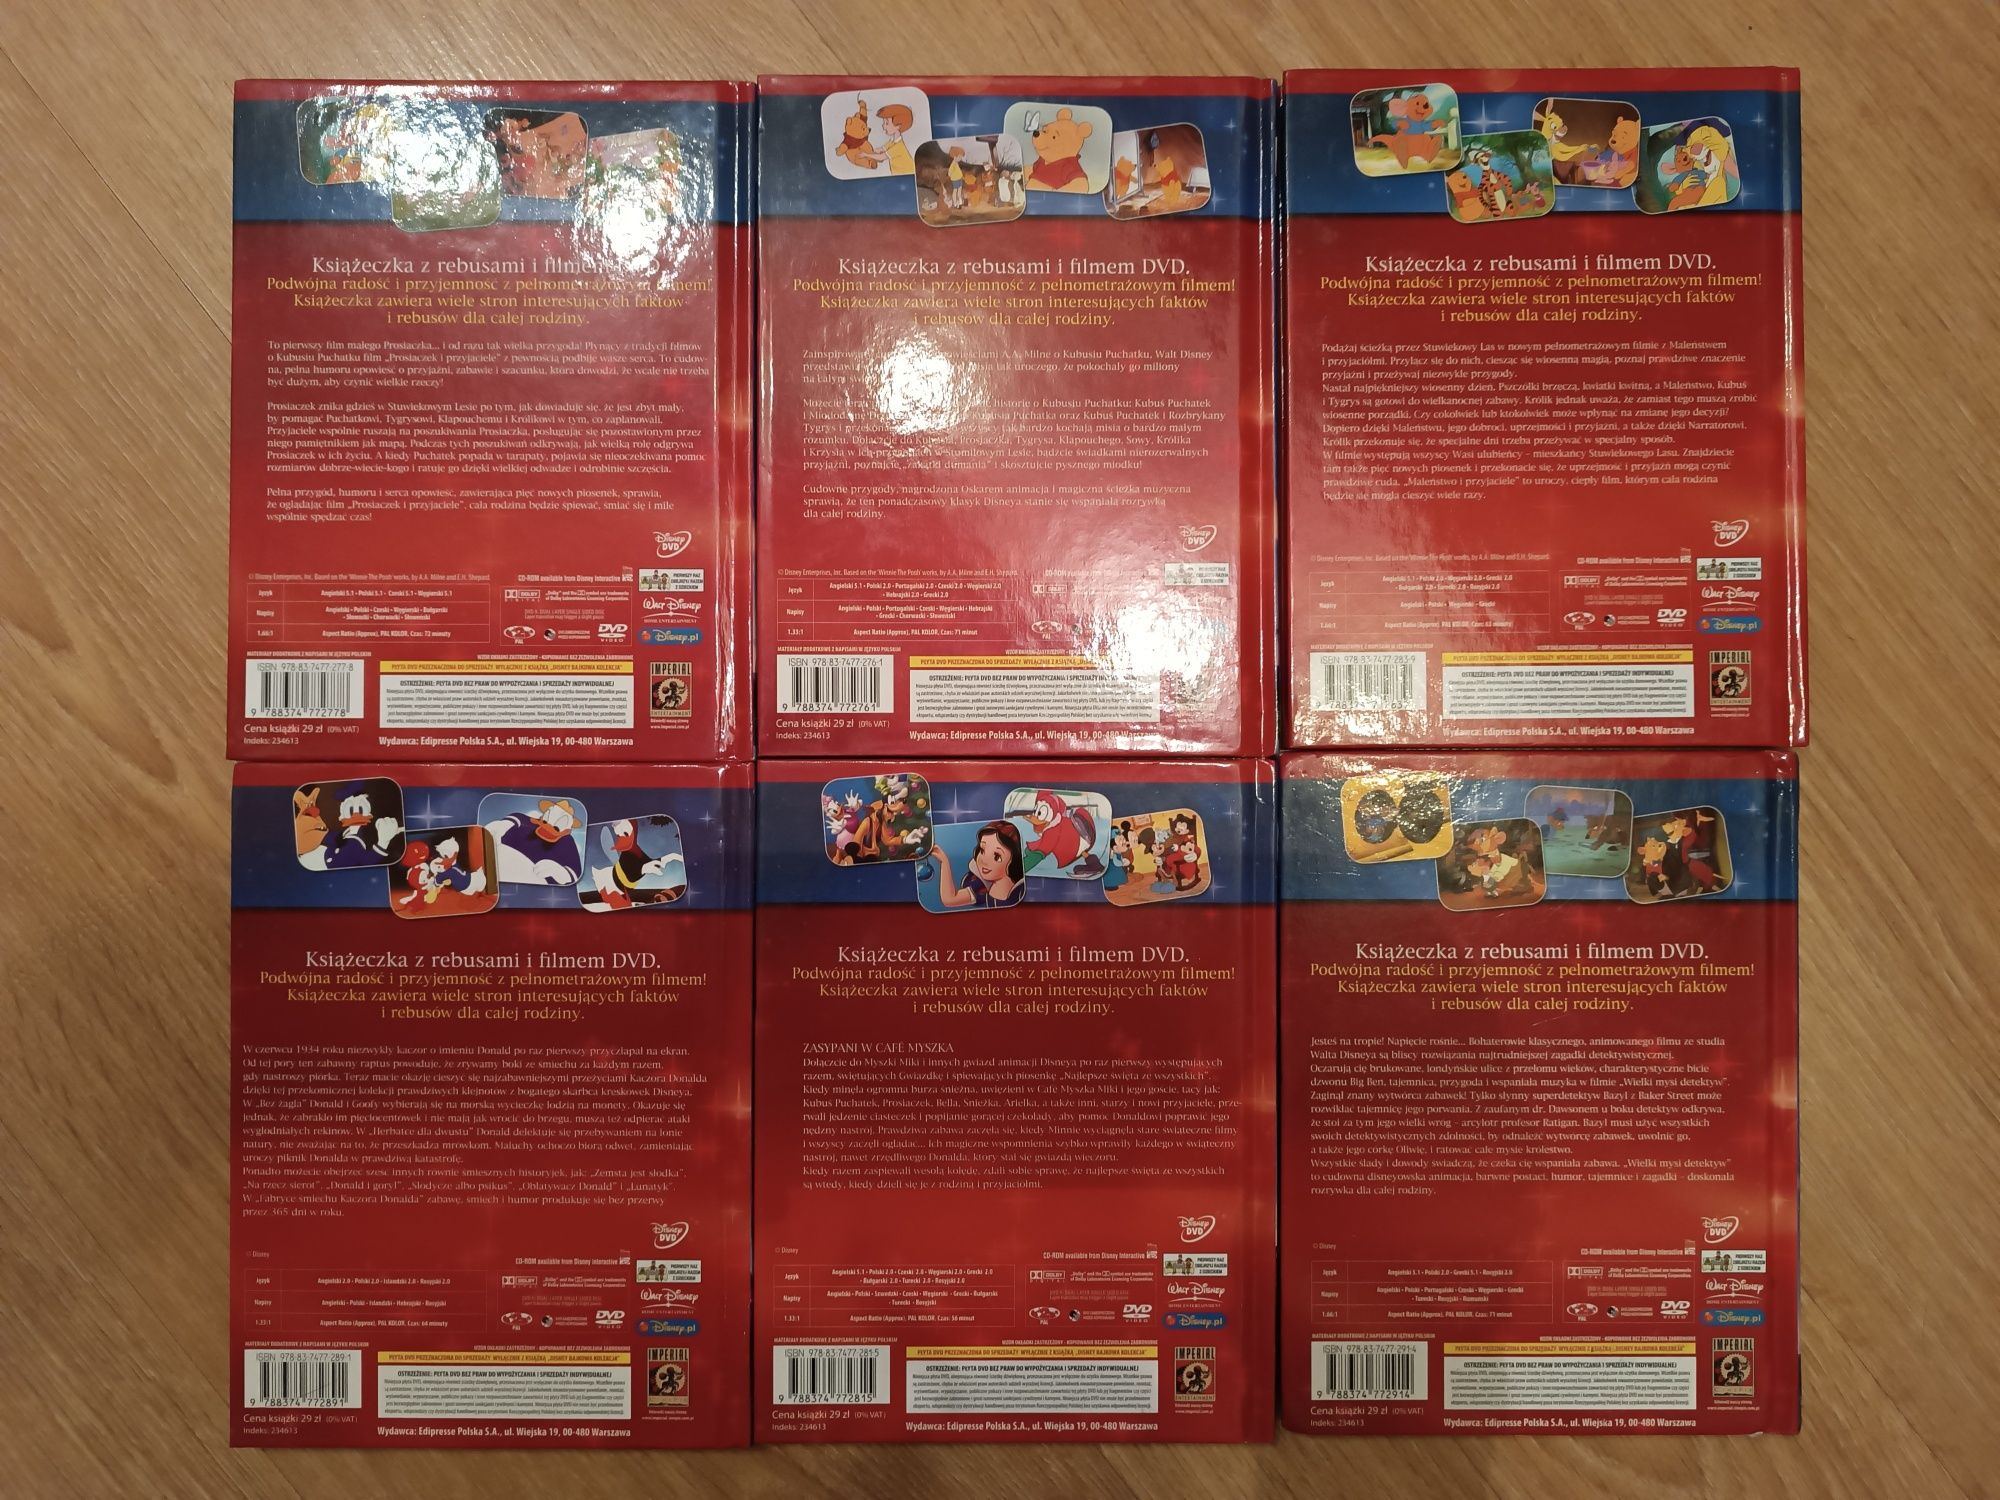 Kolekcja 6 x bajki na DVD - BAJKOWA KOLEKCJA Disney:
1 x Mickey - Magi